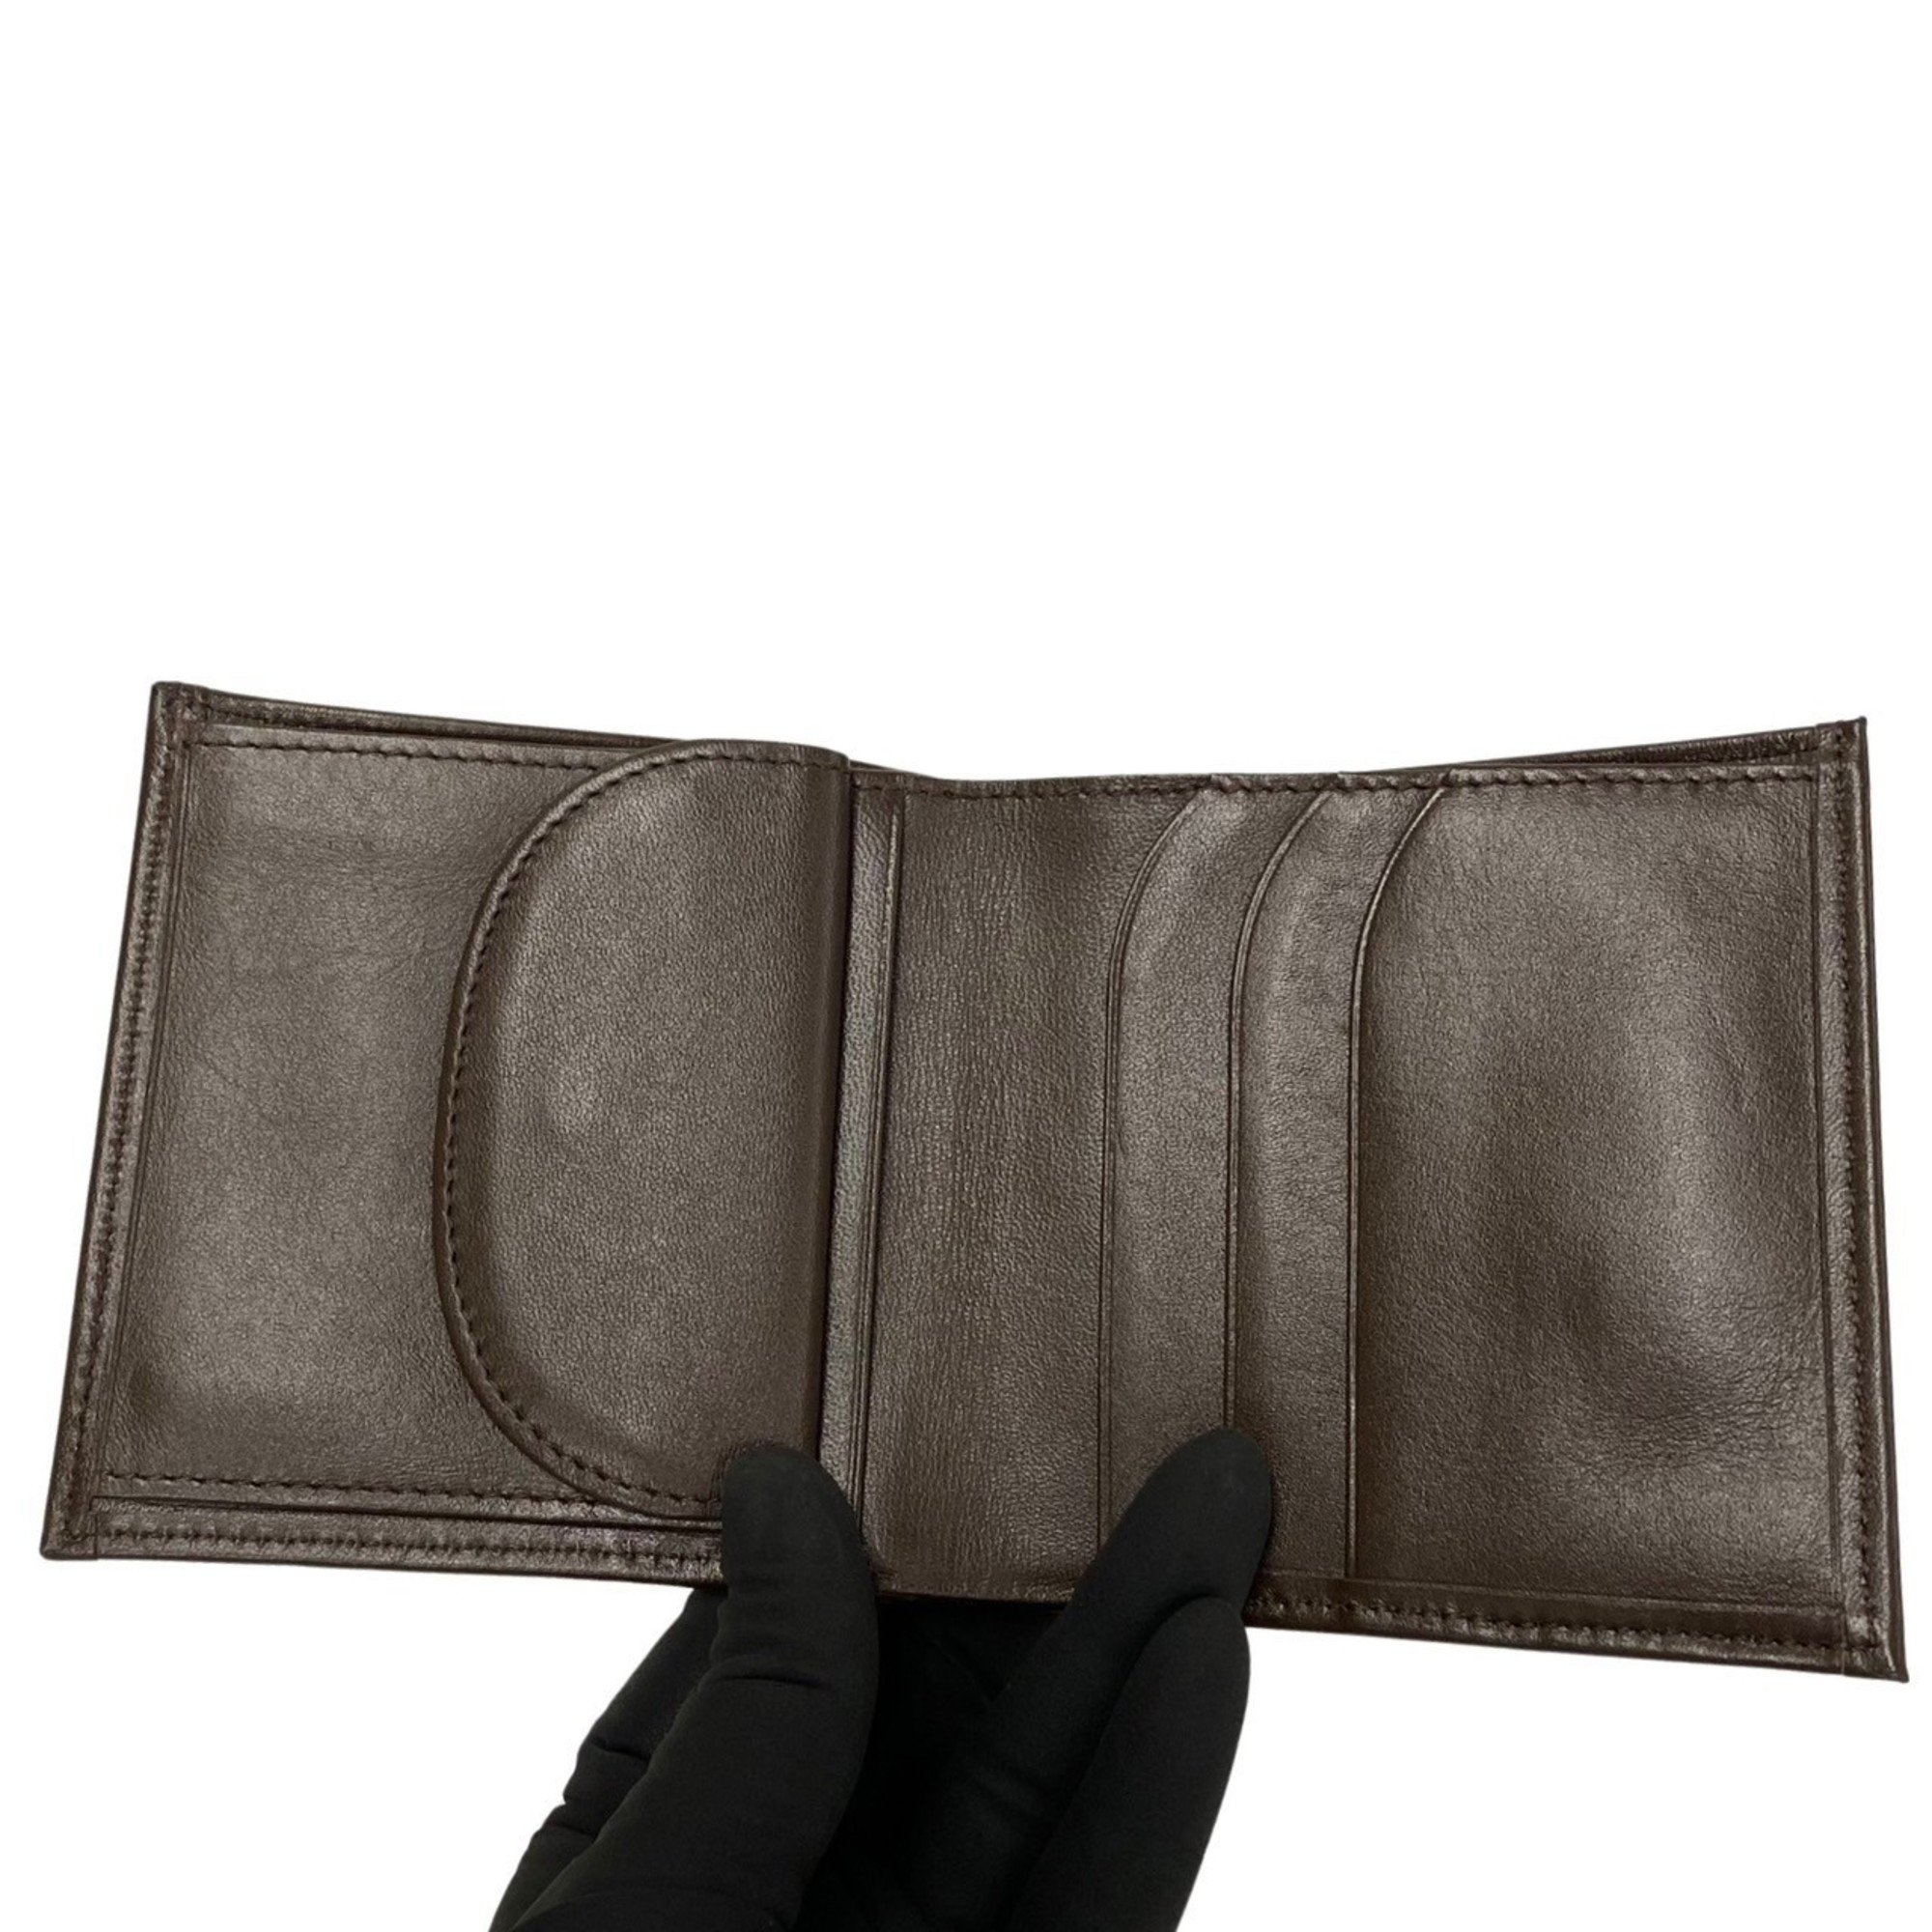 Burberrys Nova Check Pattern Canvas Leather Bi-fold Wallet Brown 84014